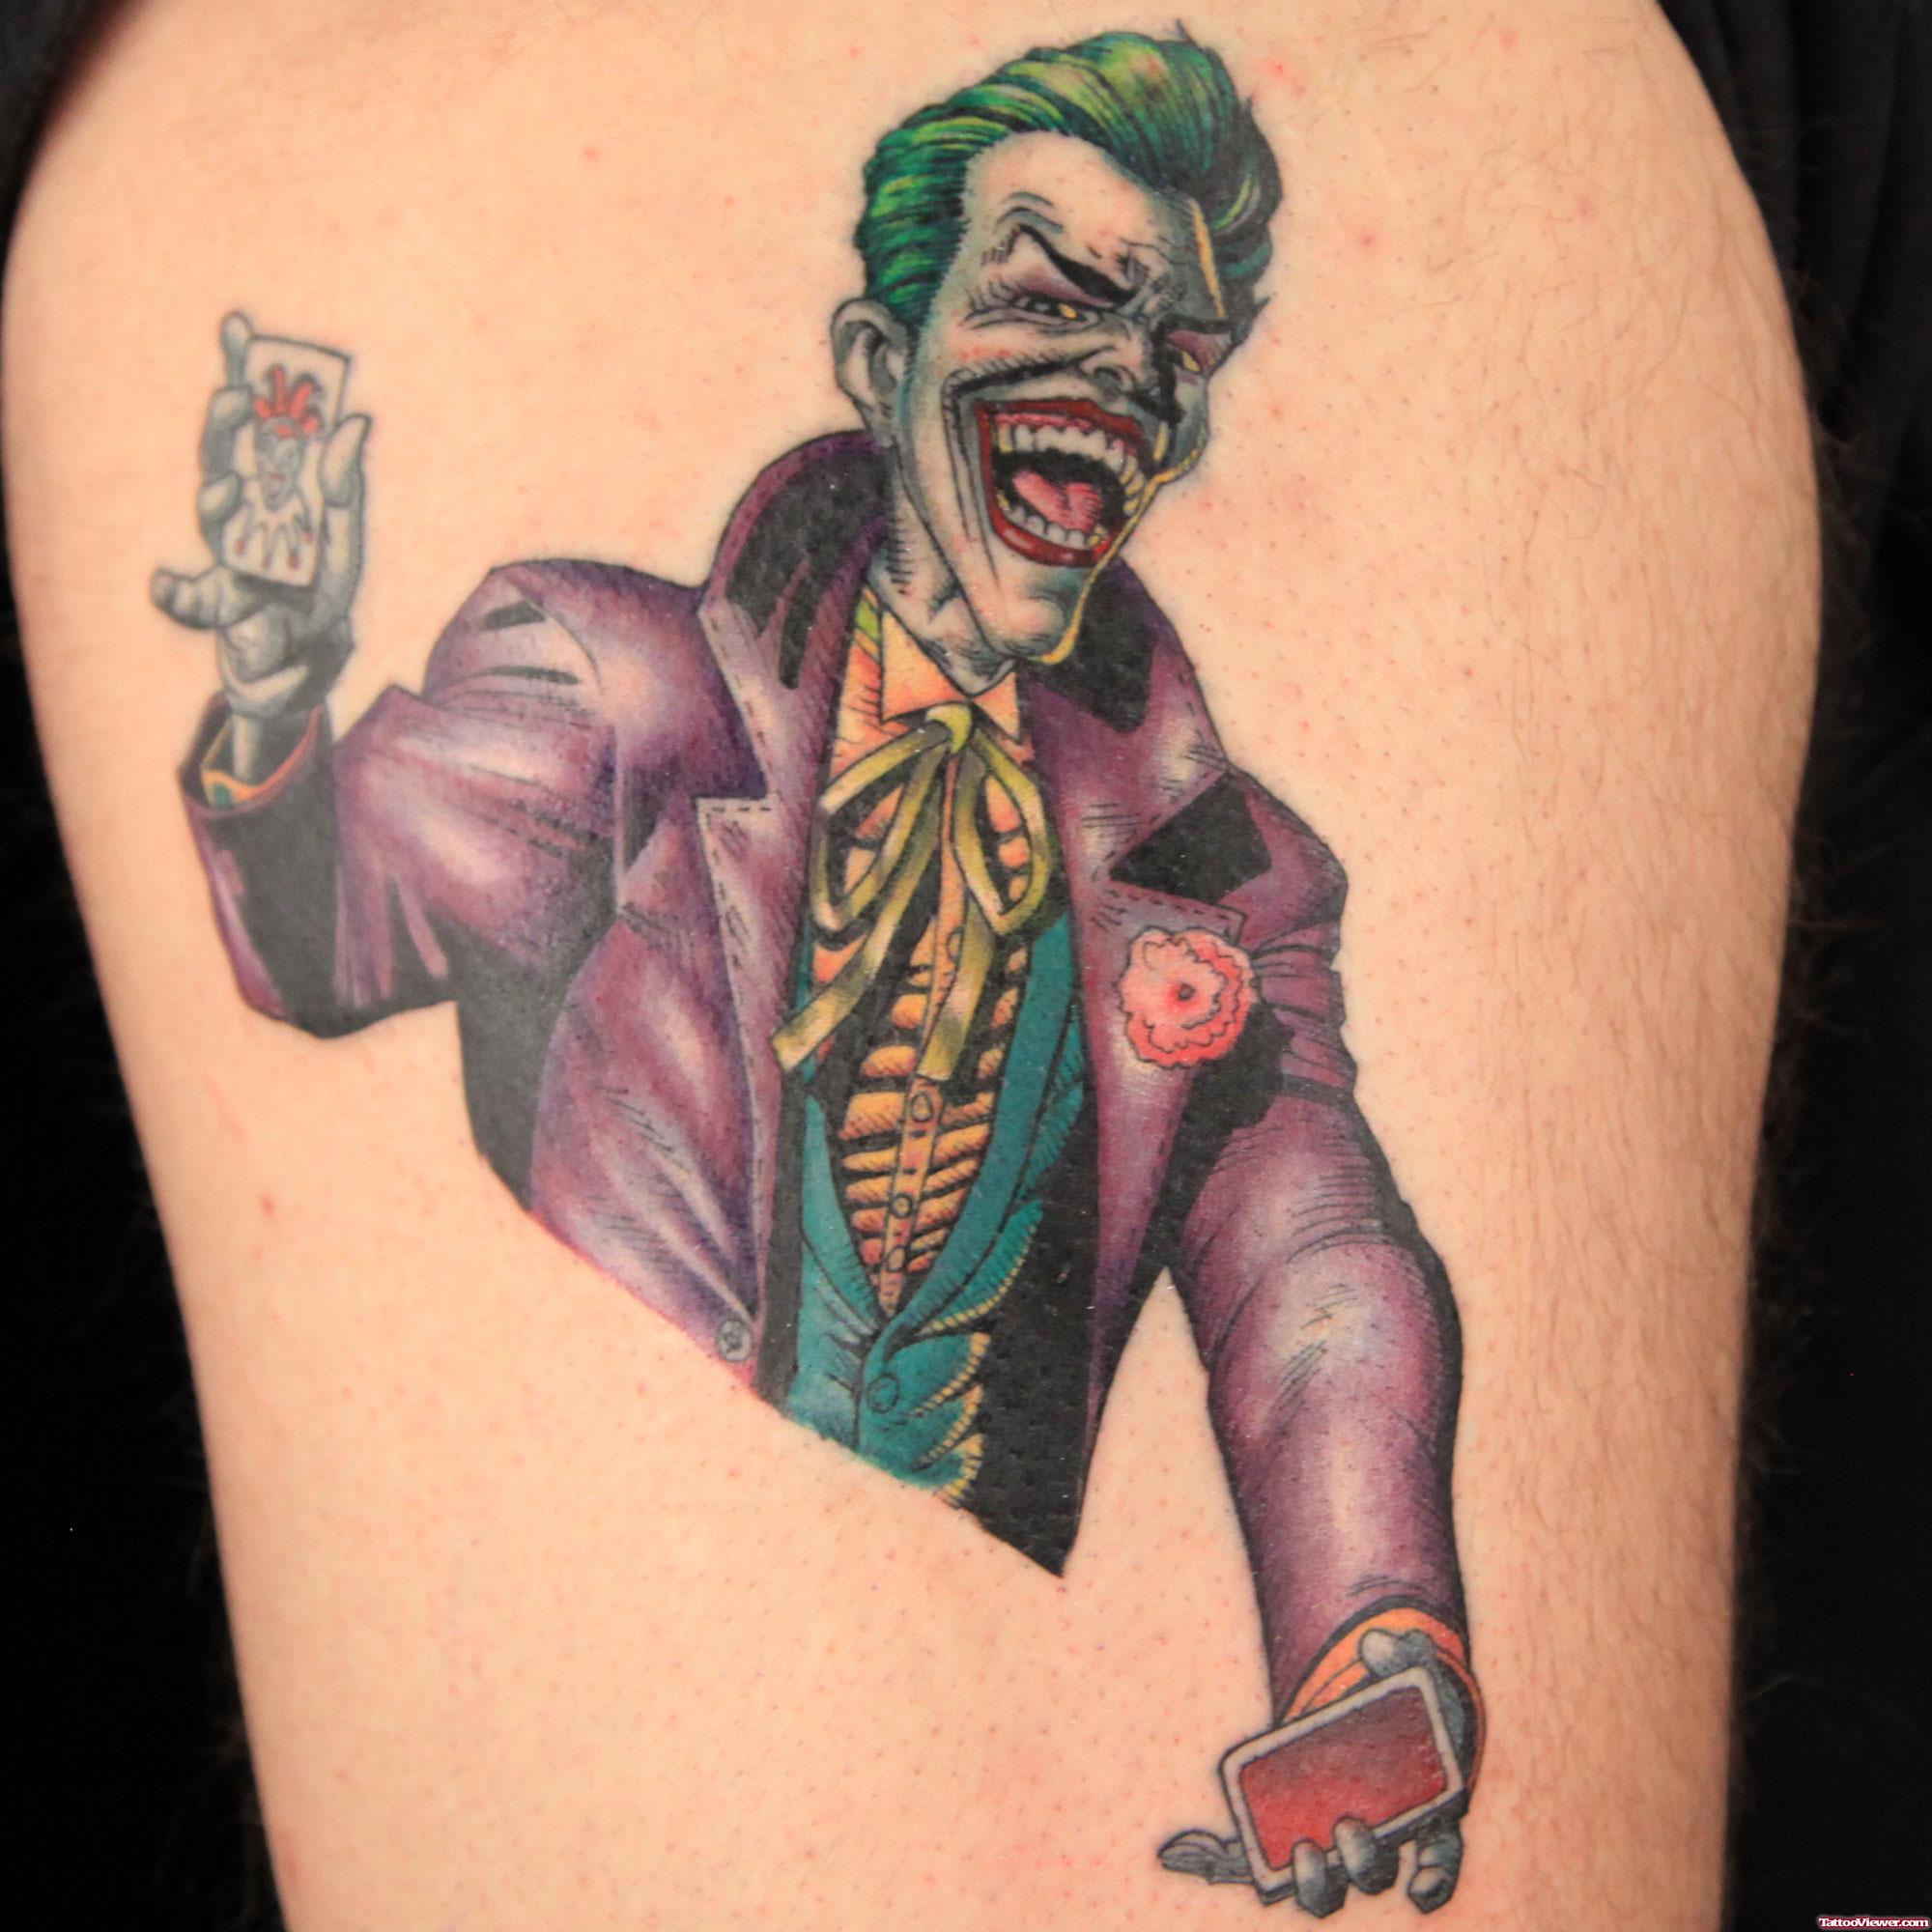 Tổng hợp các mẫu hình xăm Joker đầy bí ẩn và cực kì cuốn hút